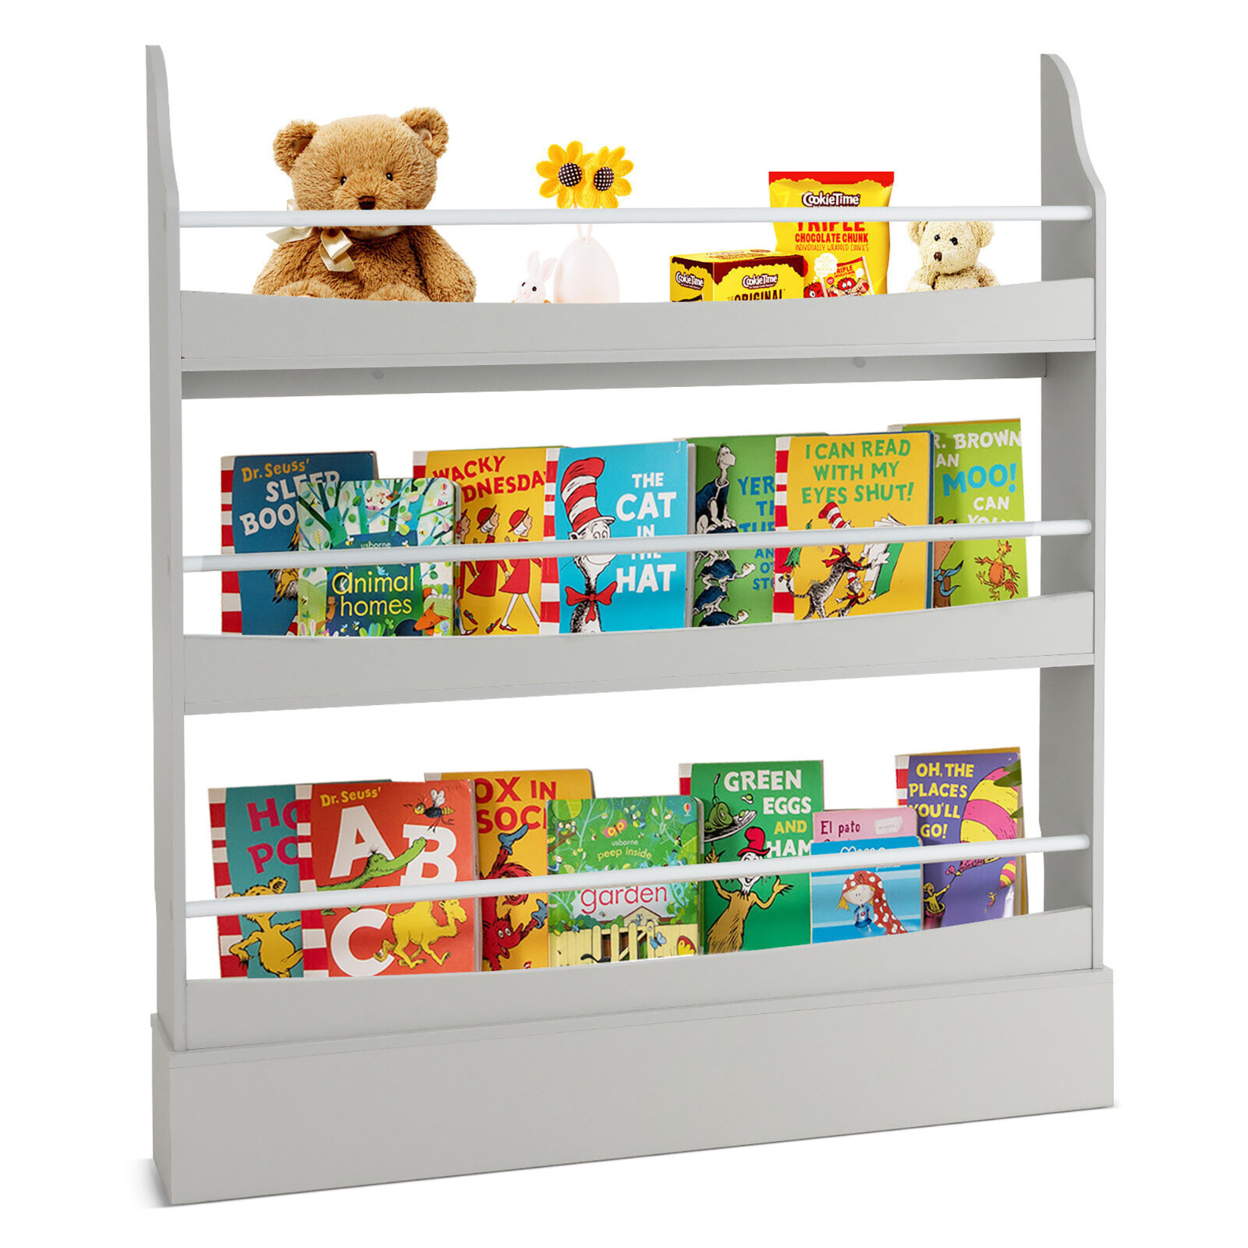 3-Tier Kids Bookshelf Toy Storage Bookcase Rack Wall W/ Anti-toppling Kits - Grey